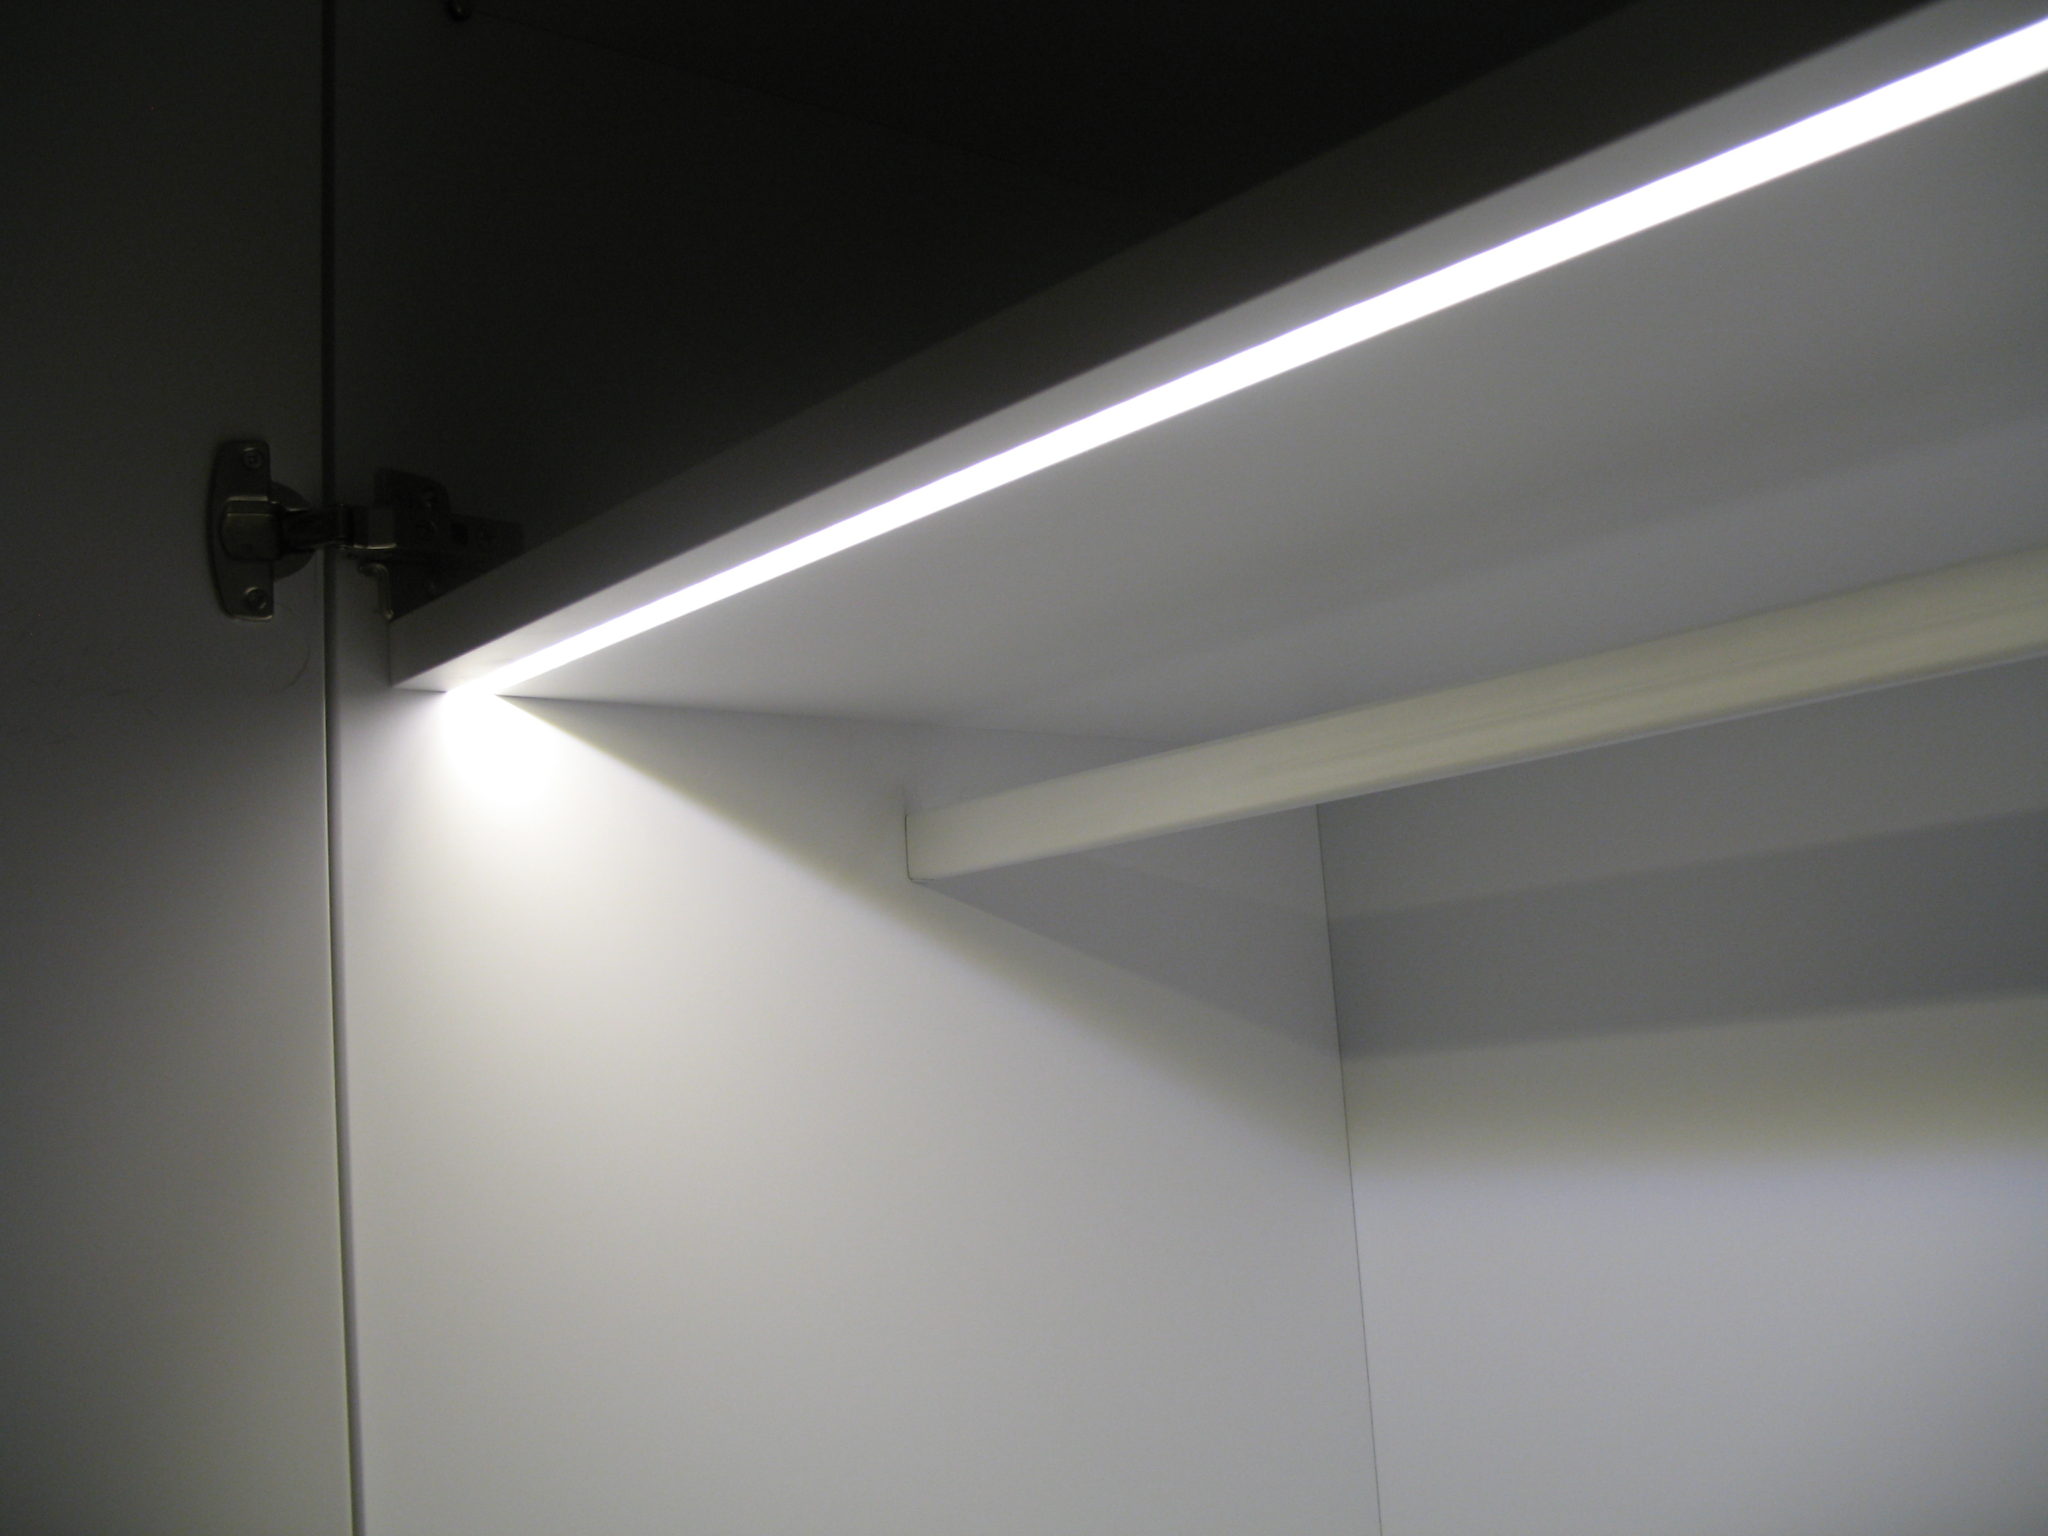 Luz en interior de armario - Carpintería Miraflores